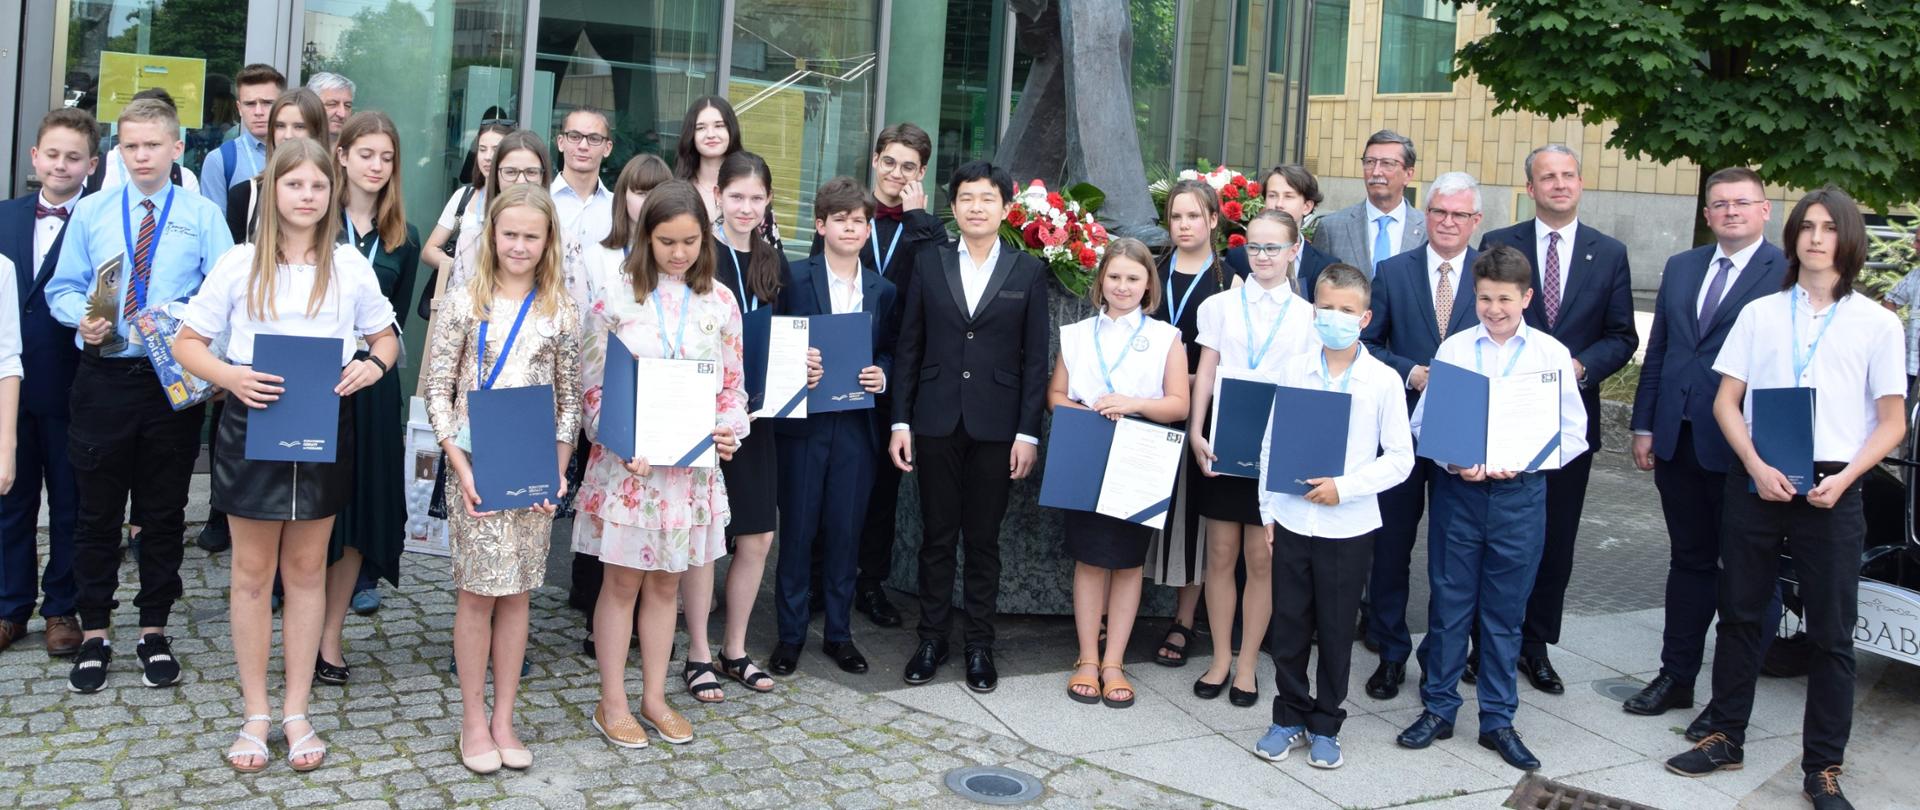 Grupa dzieci stojących przed budynkiem. Dzieci mają medale, w rękach trzymają teczki z dyplomami. Po prawej stronie wiceminister Rzymowski, profesor Jan Żaryn i przedstawiciele organizatorów przedsięwzięcia. 